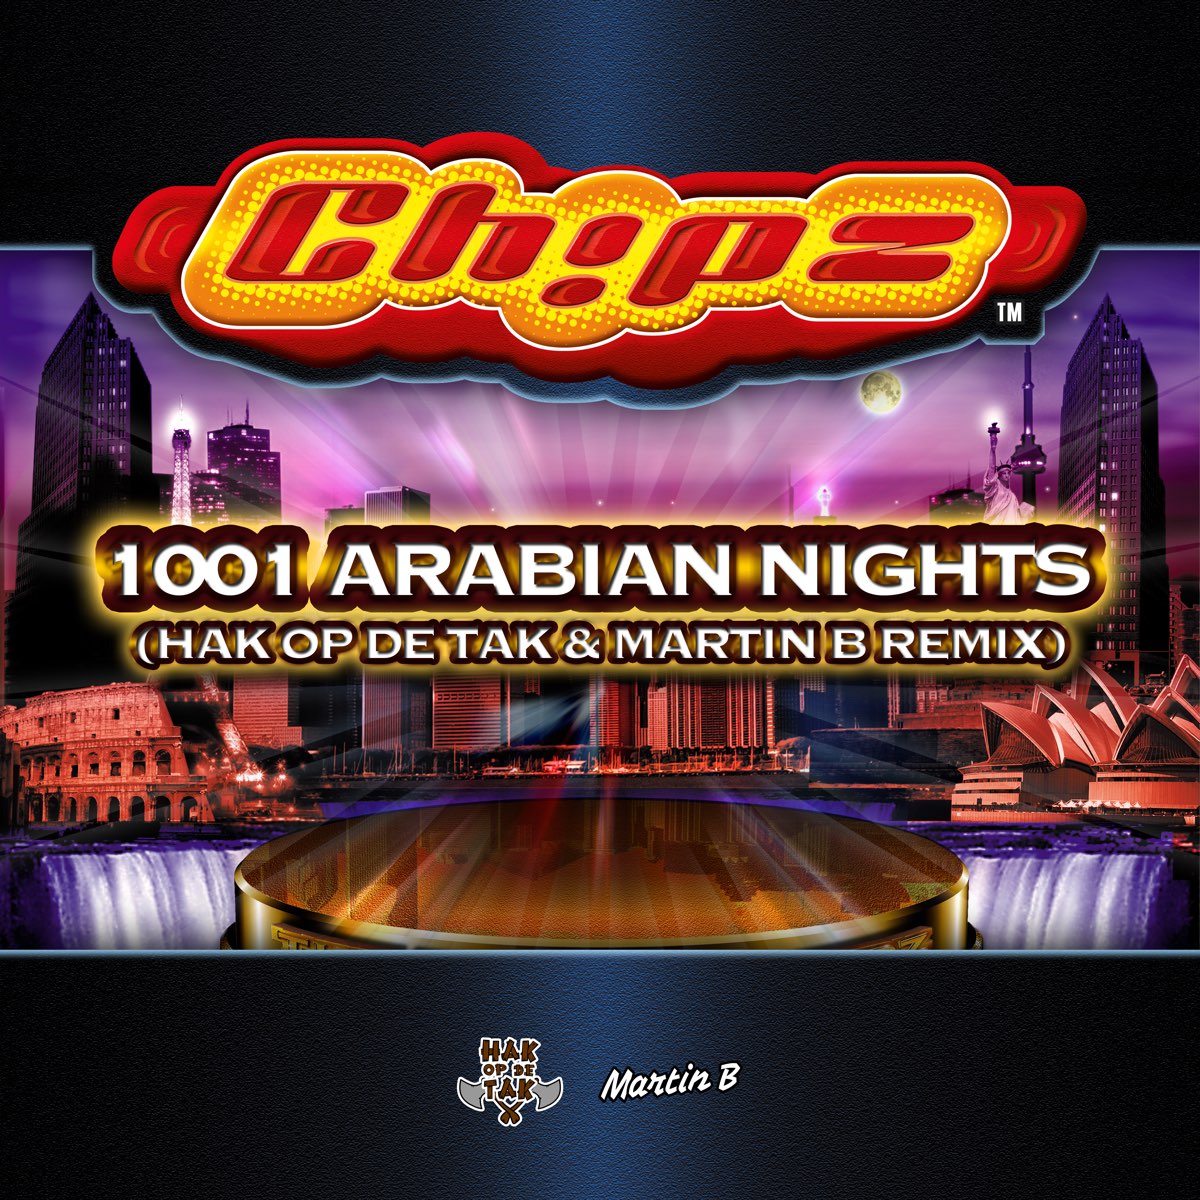 1001 arabian nights lyrics